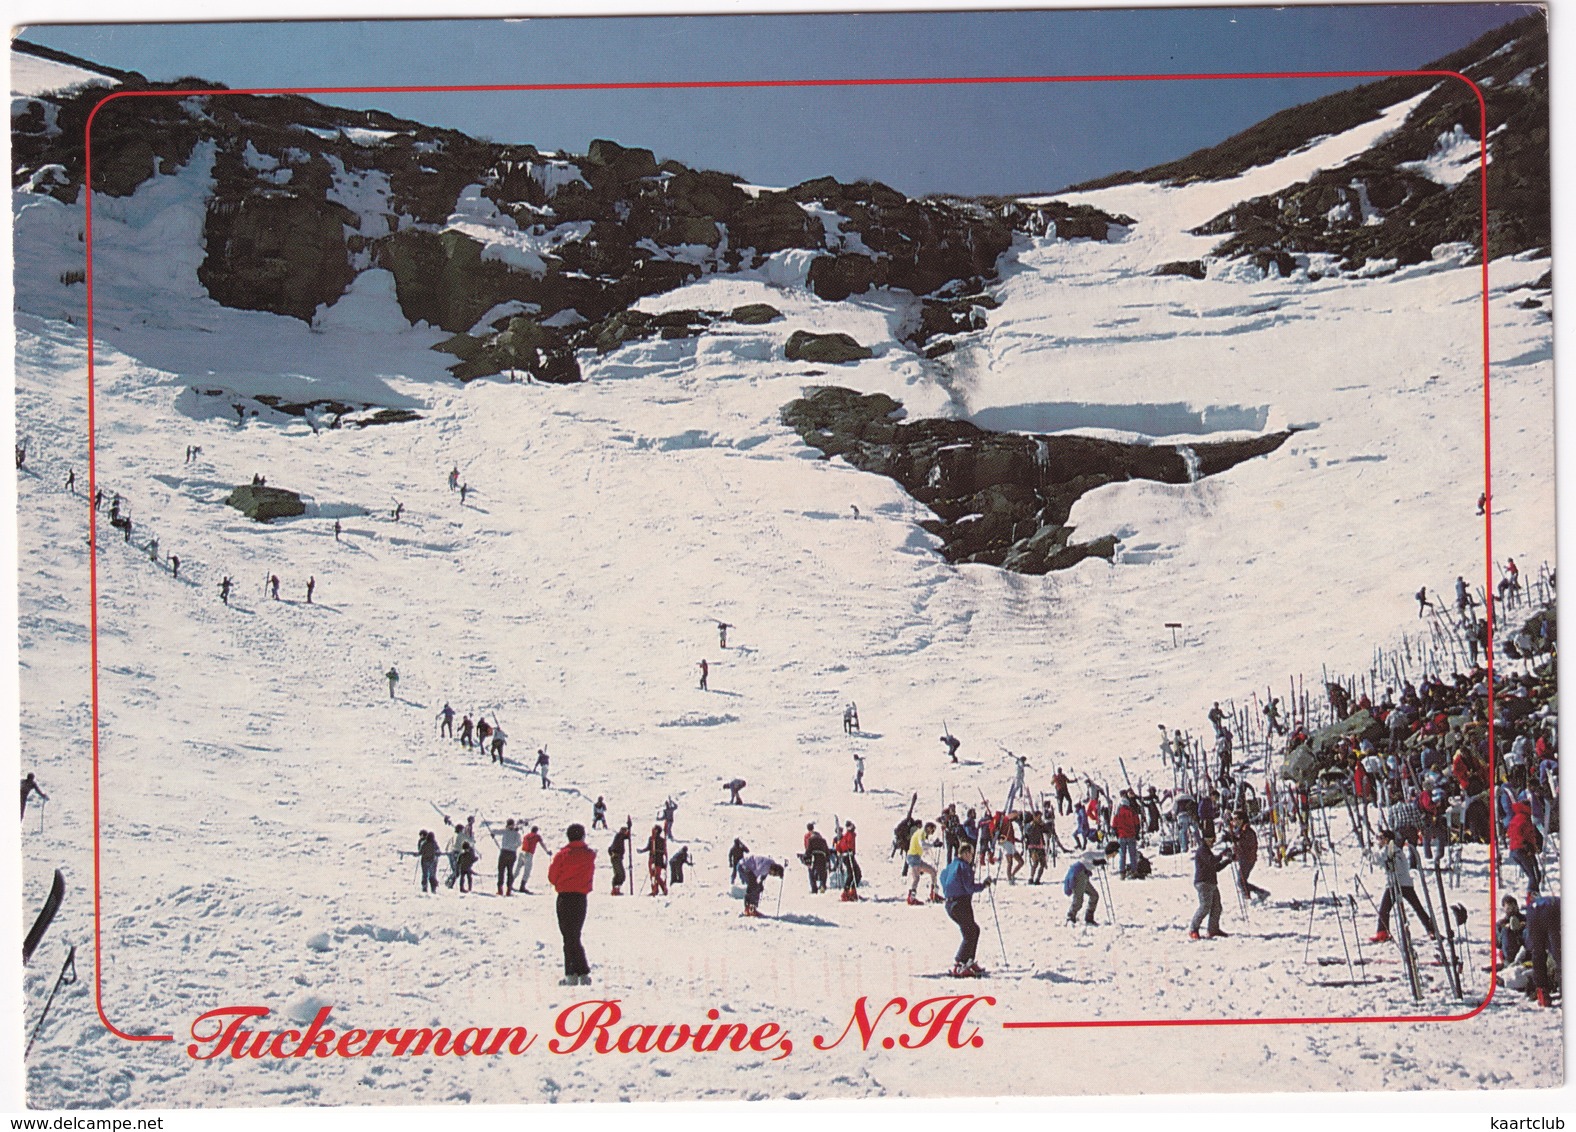 Tuckerman Ravine - Spring Skiing In The White Mountains Of N.H. - White Mountains